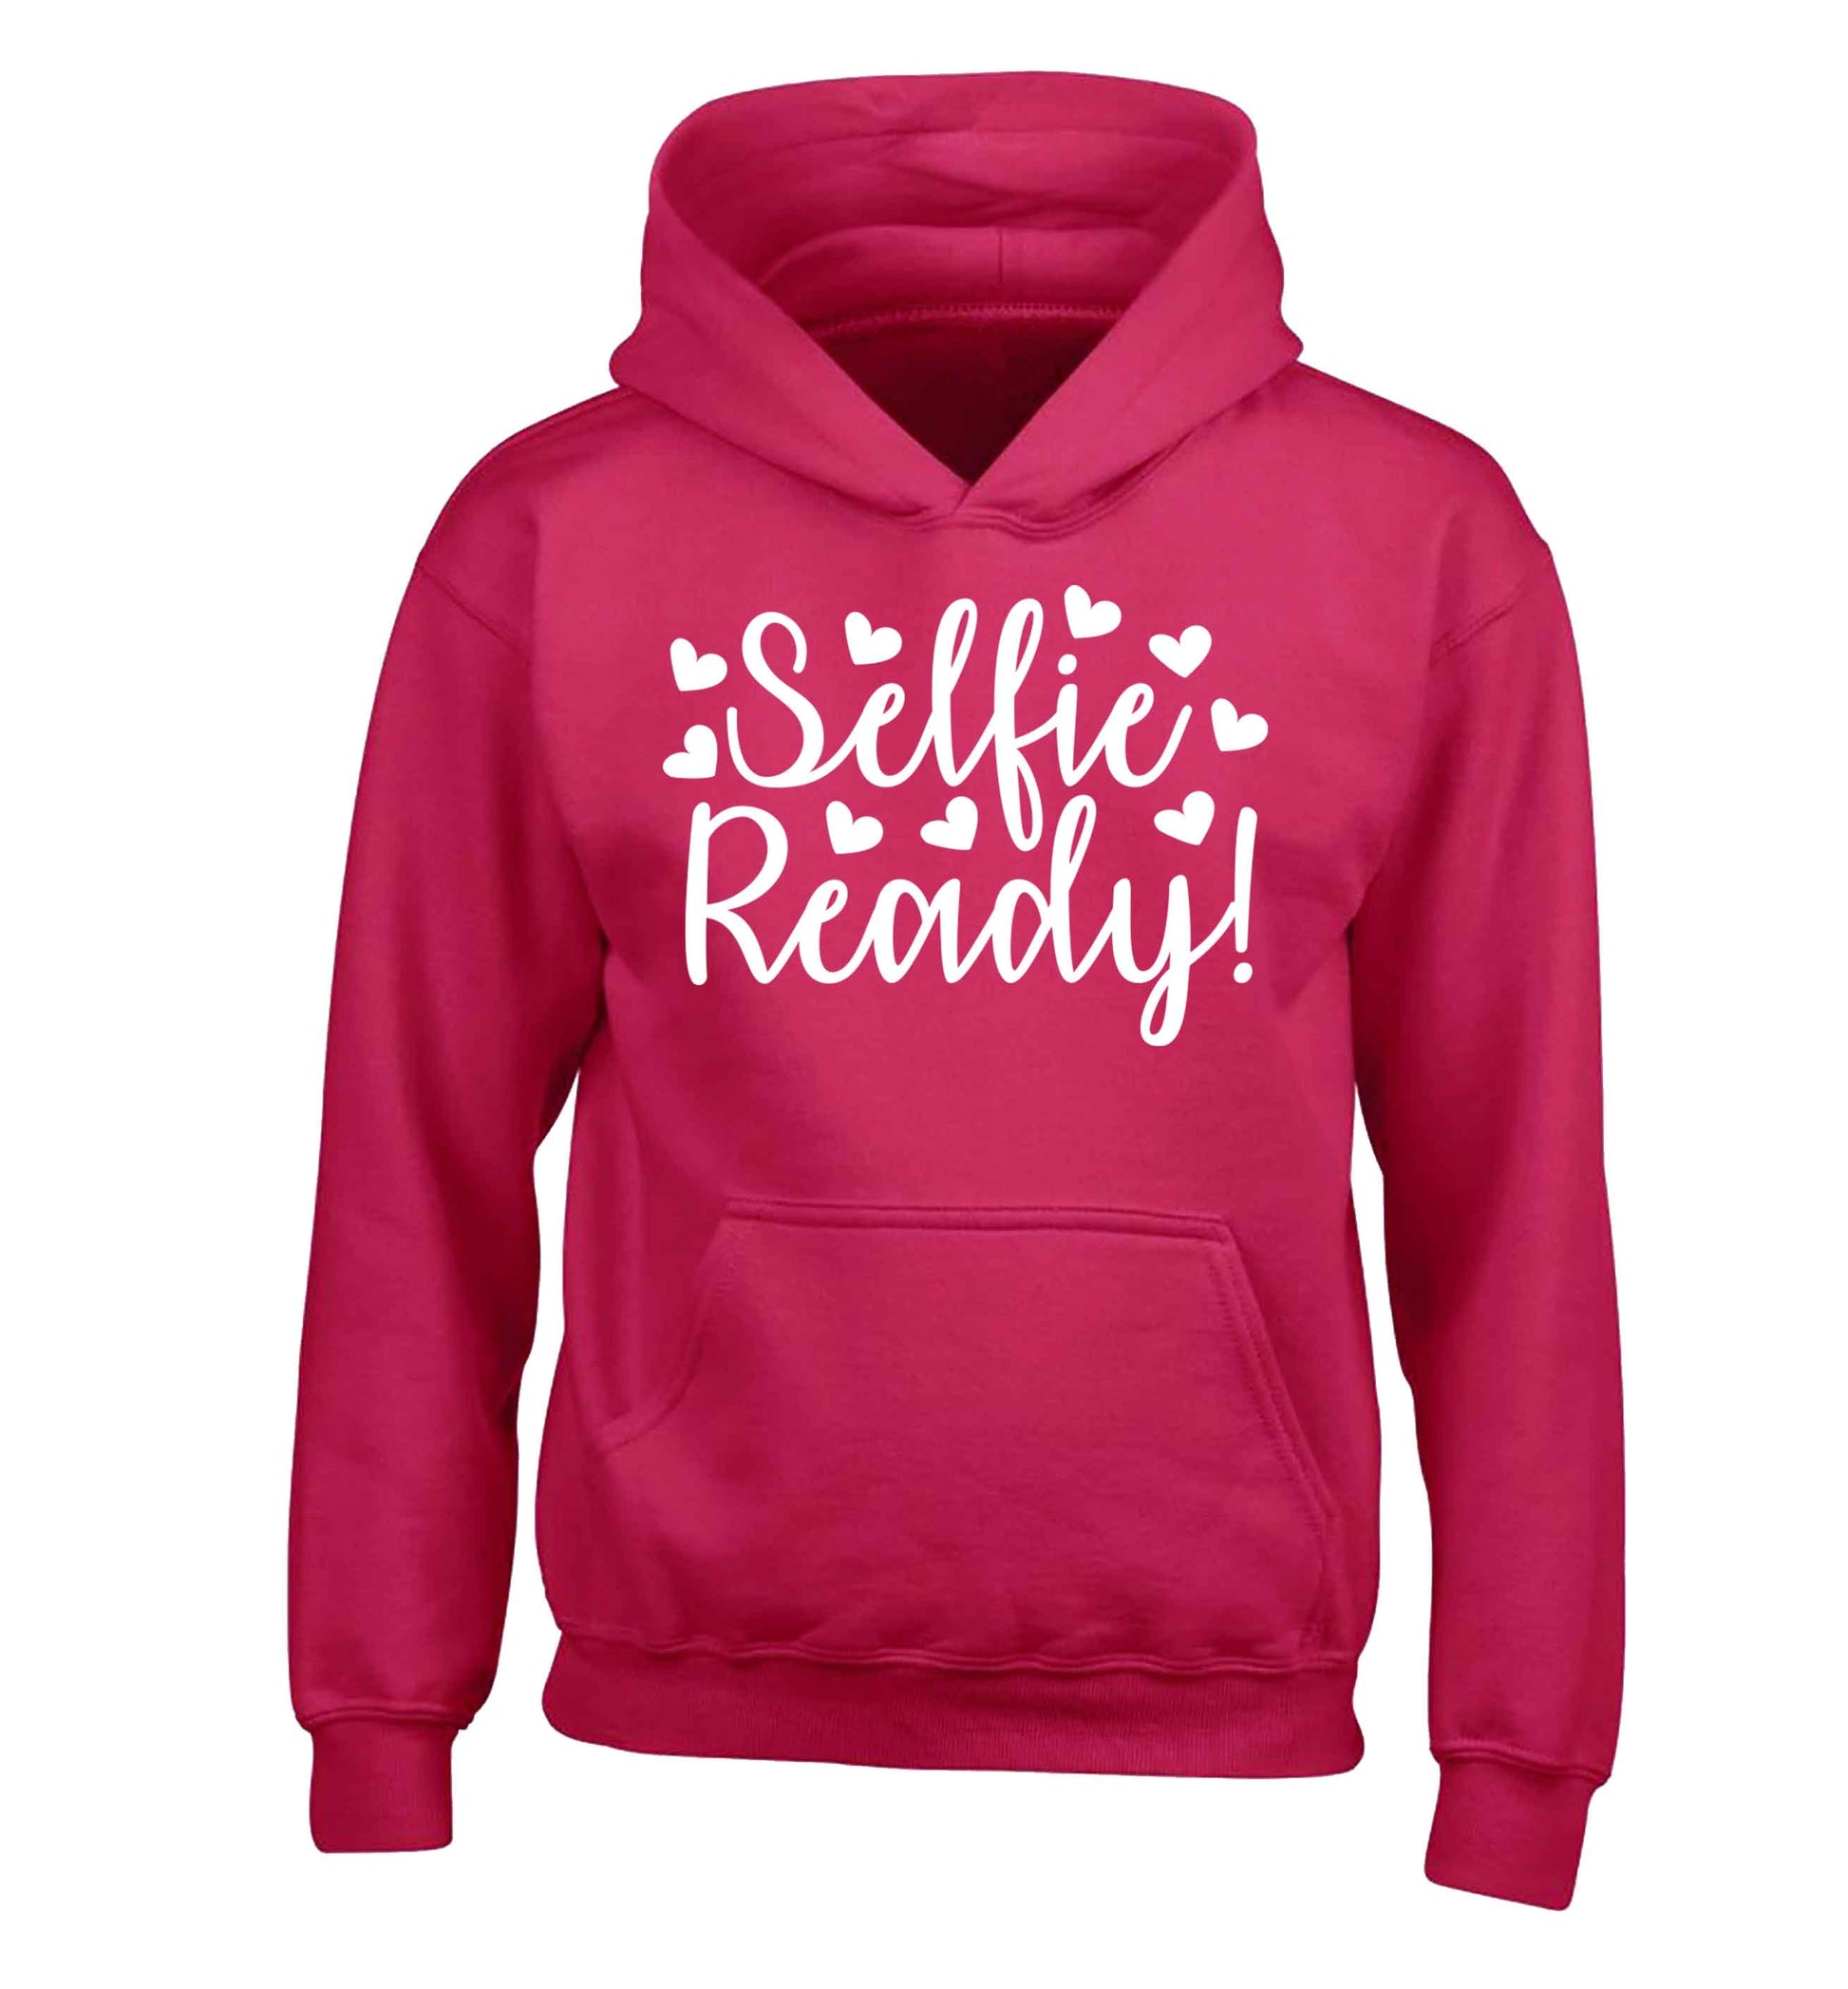 Selfie ready children's pink hoodie 12-13 Years